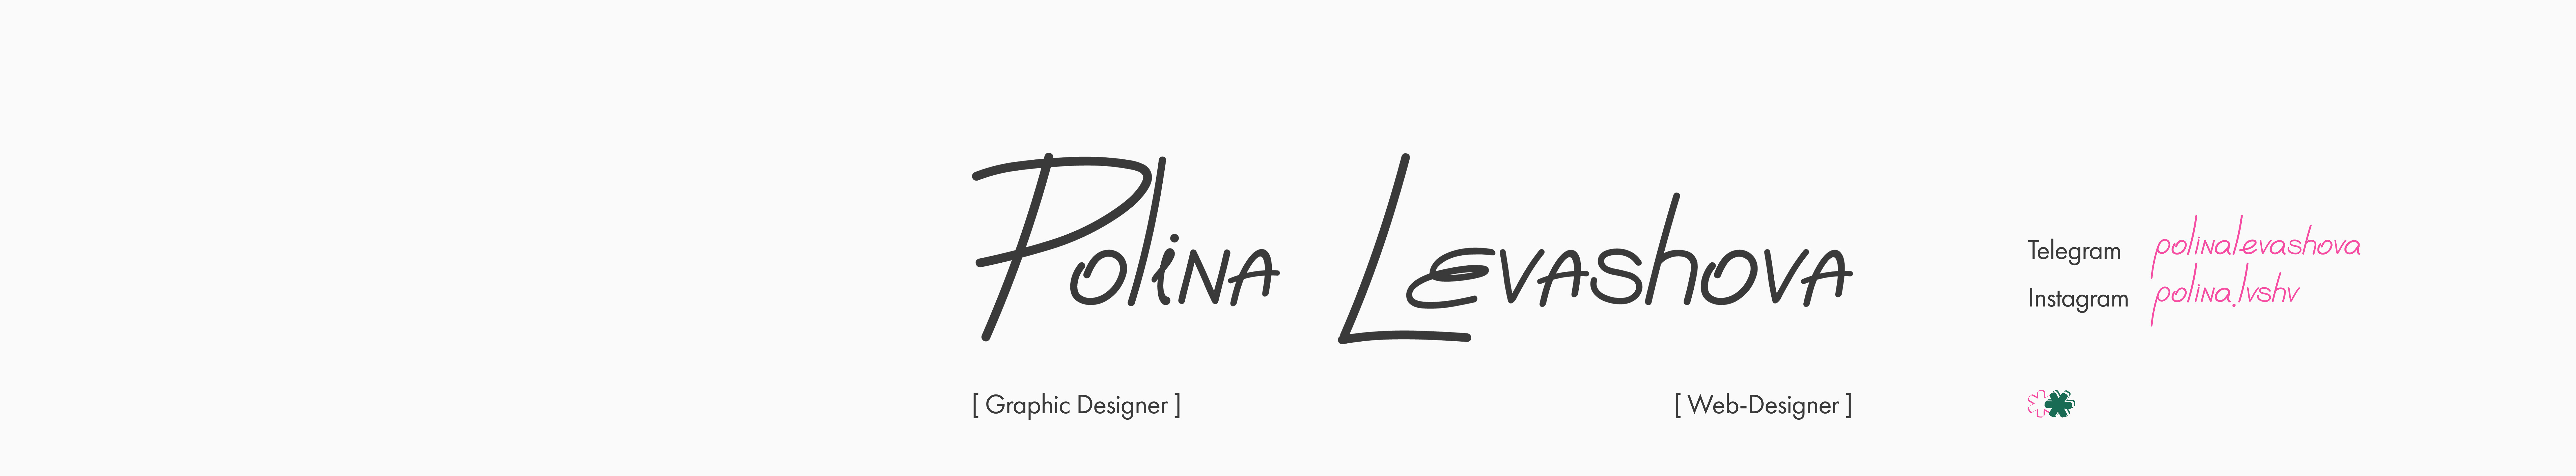 Banner de perfil de Polina Levashova